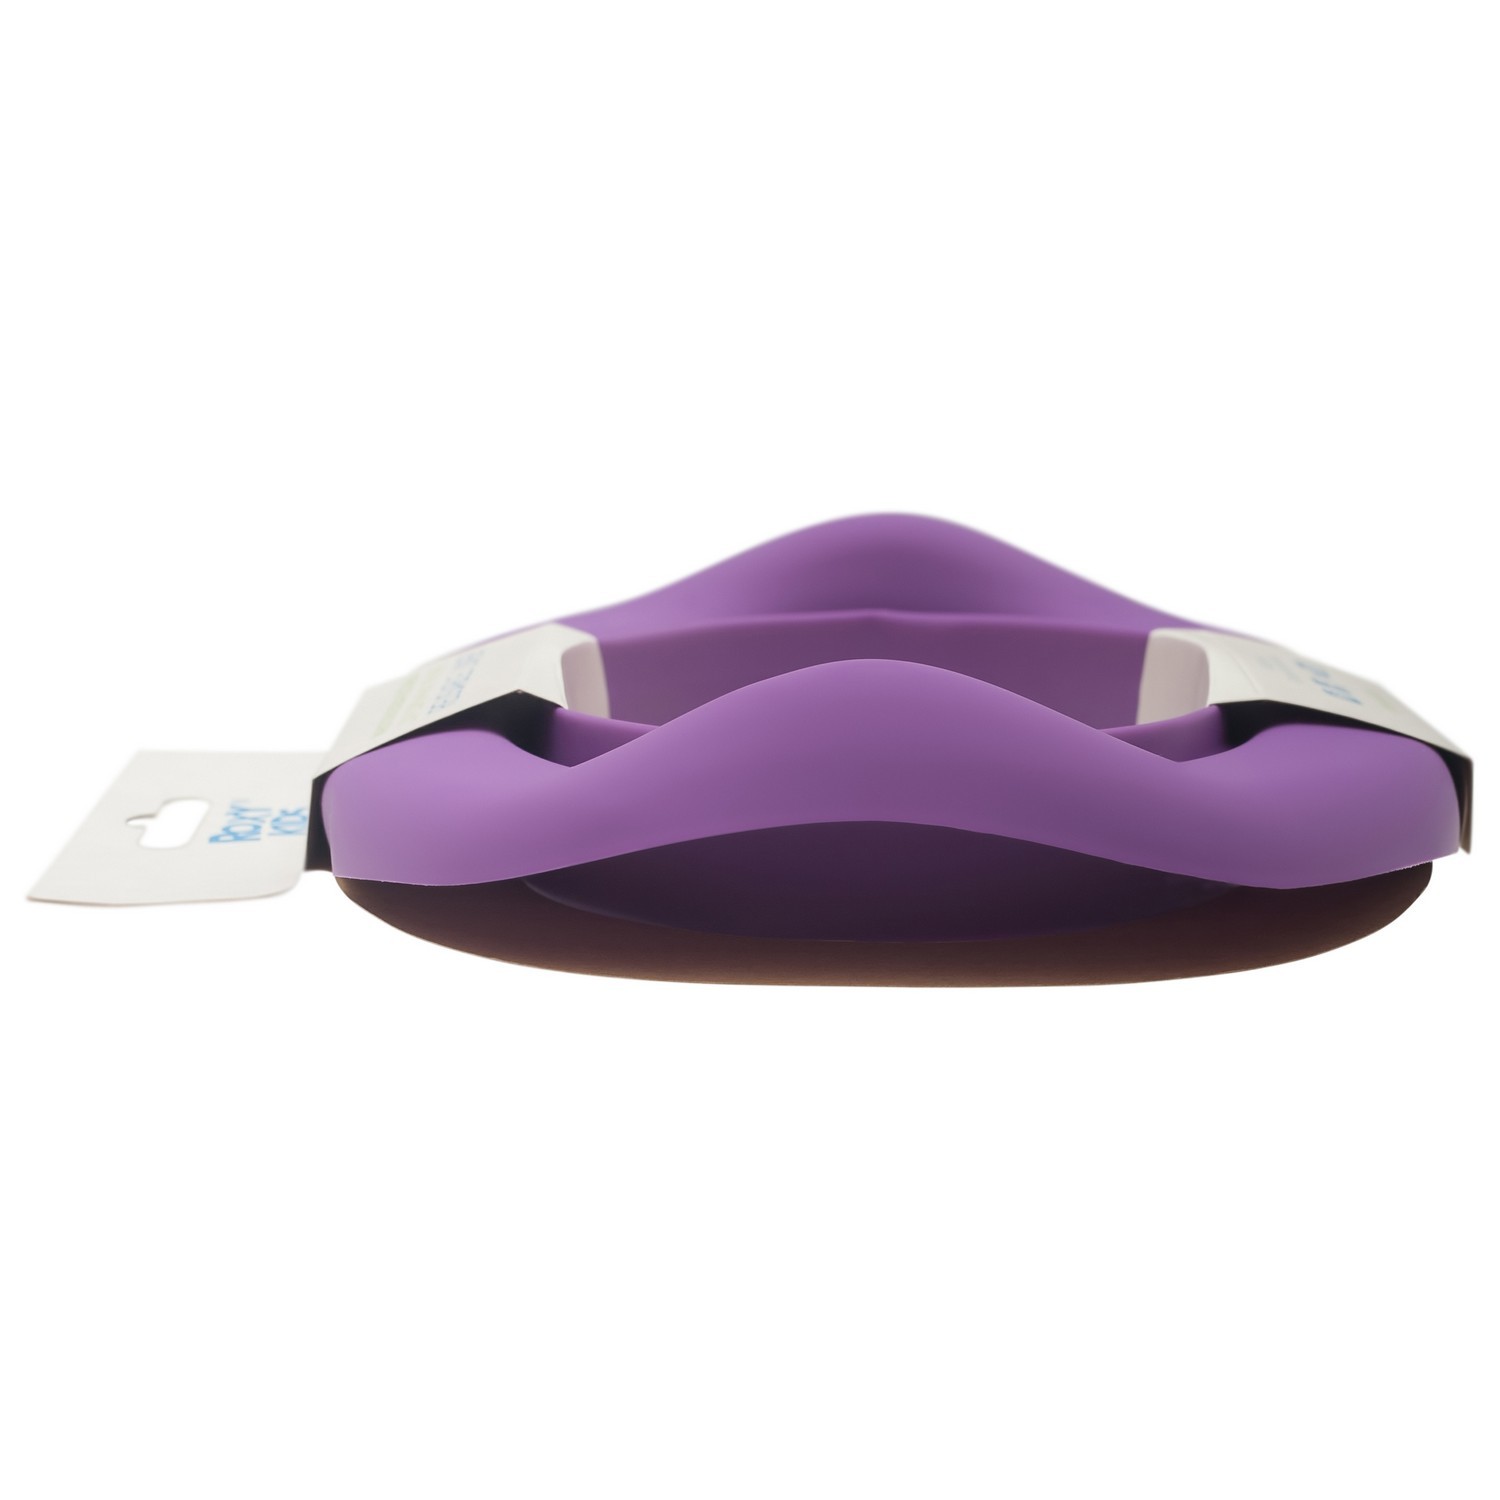 Вкладка для дорожных горшков ROXY-KIDS универсальная Фиолетовый - фото 4